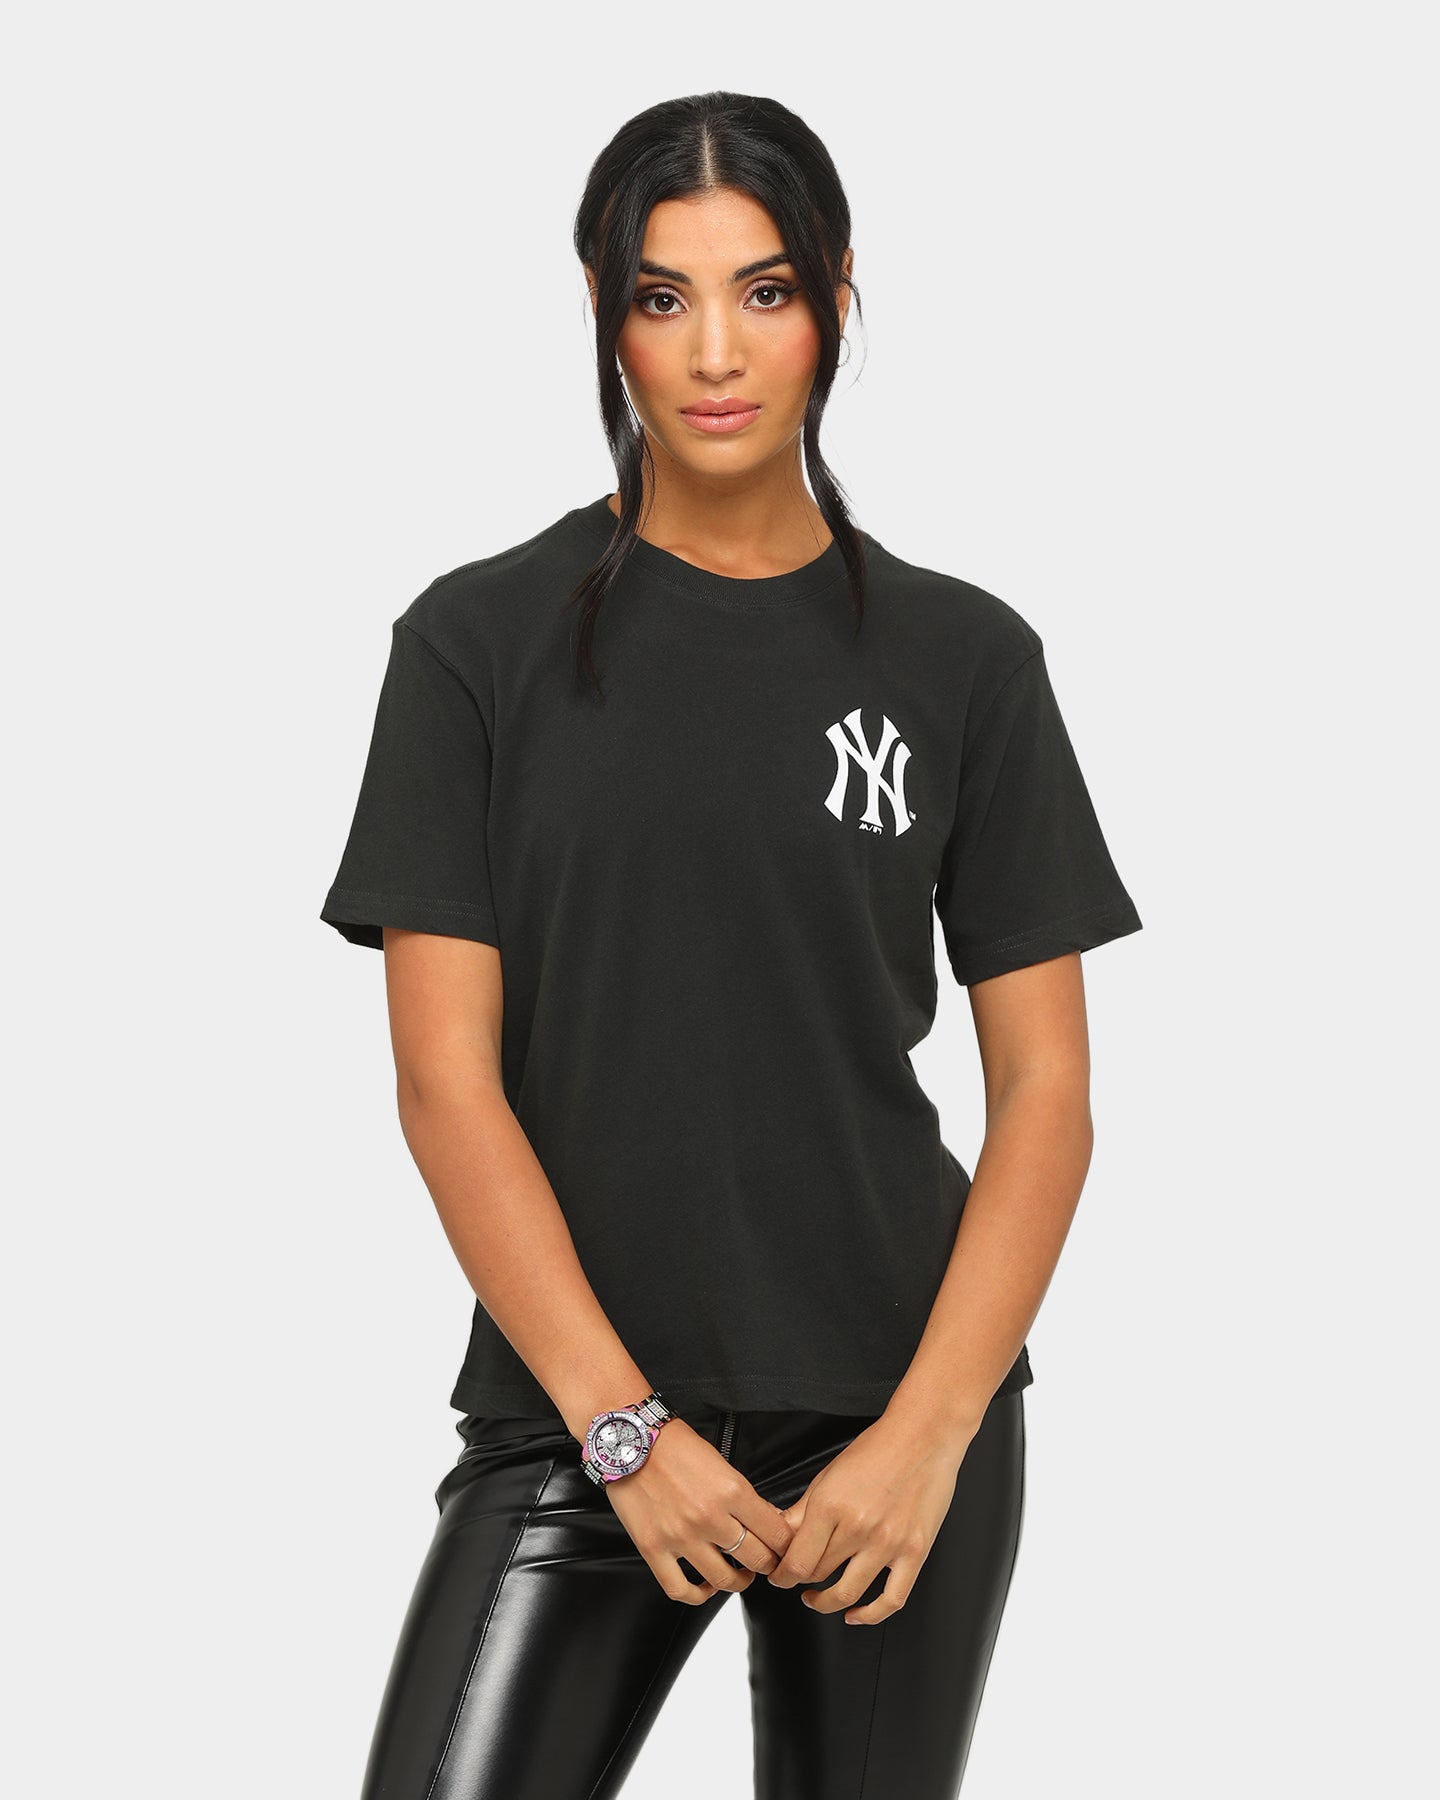 new york yankees womens shirts